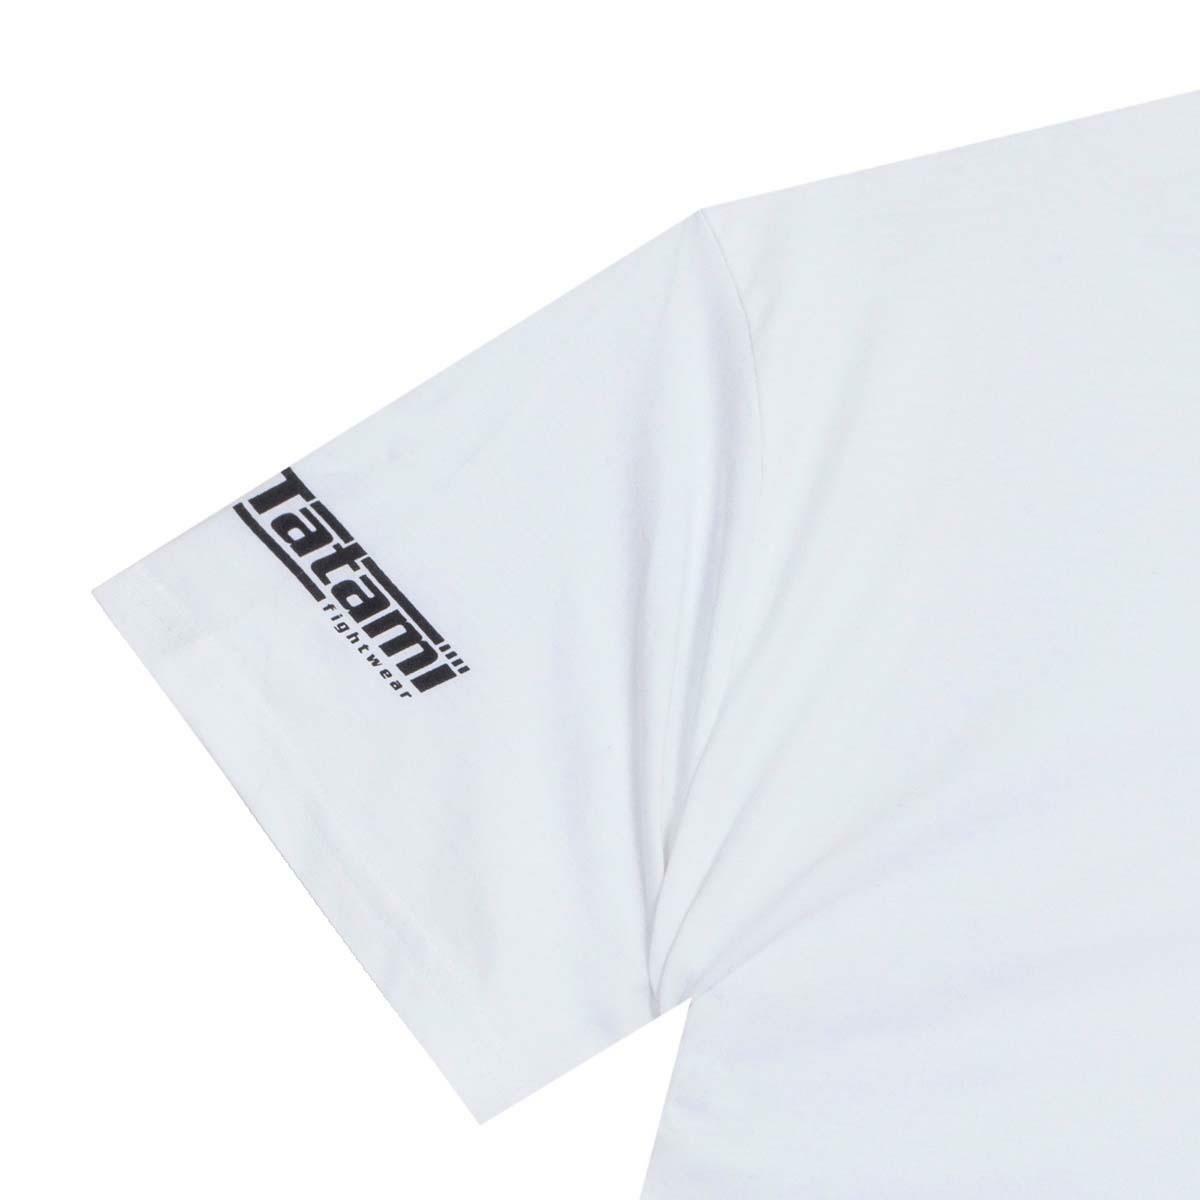 Tatami 8 Limbs T-Shirt TATT1074